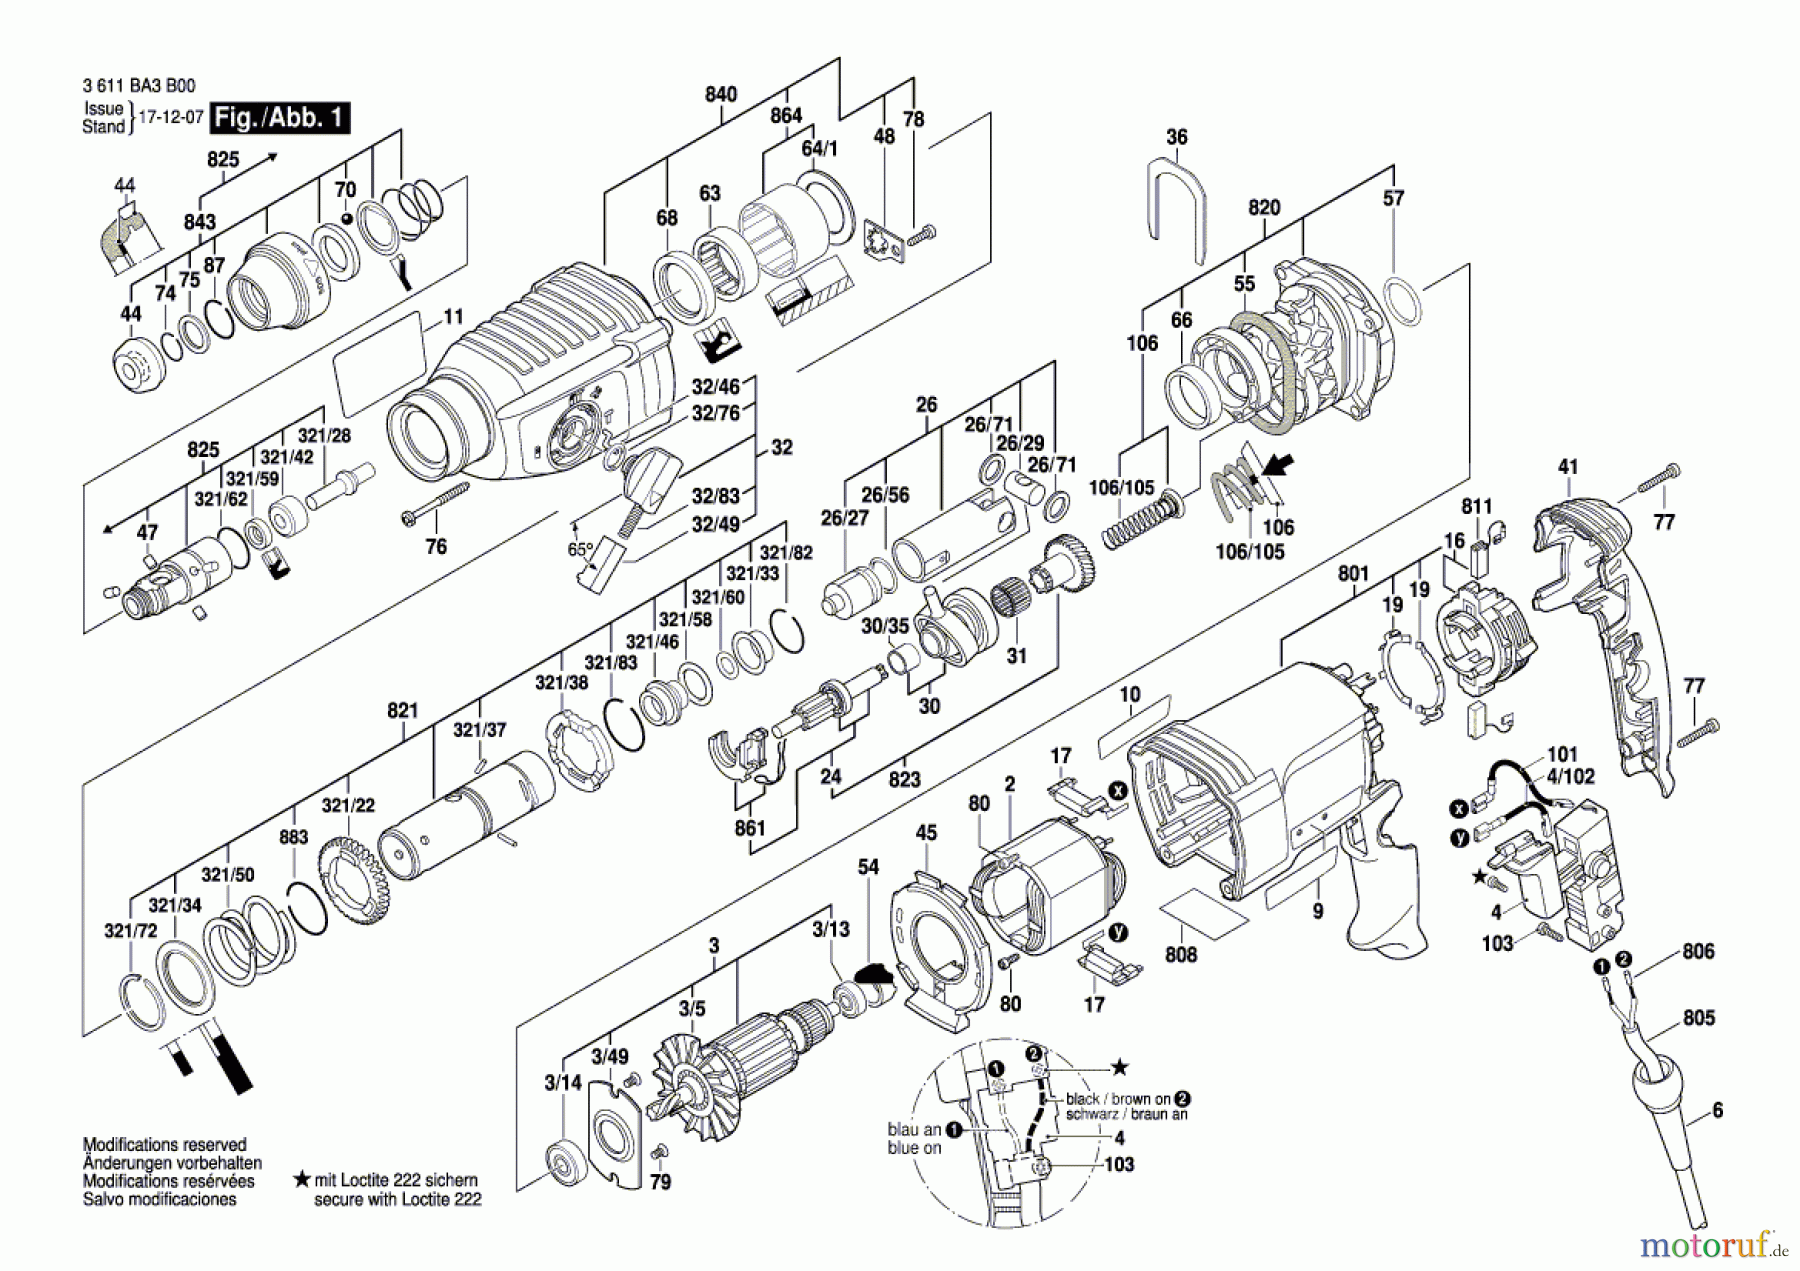  Bosch Werkzeug Bohrhammer 2 Kg BHD 2-26 830W Seite 1